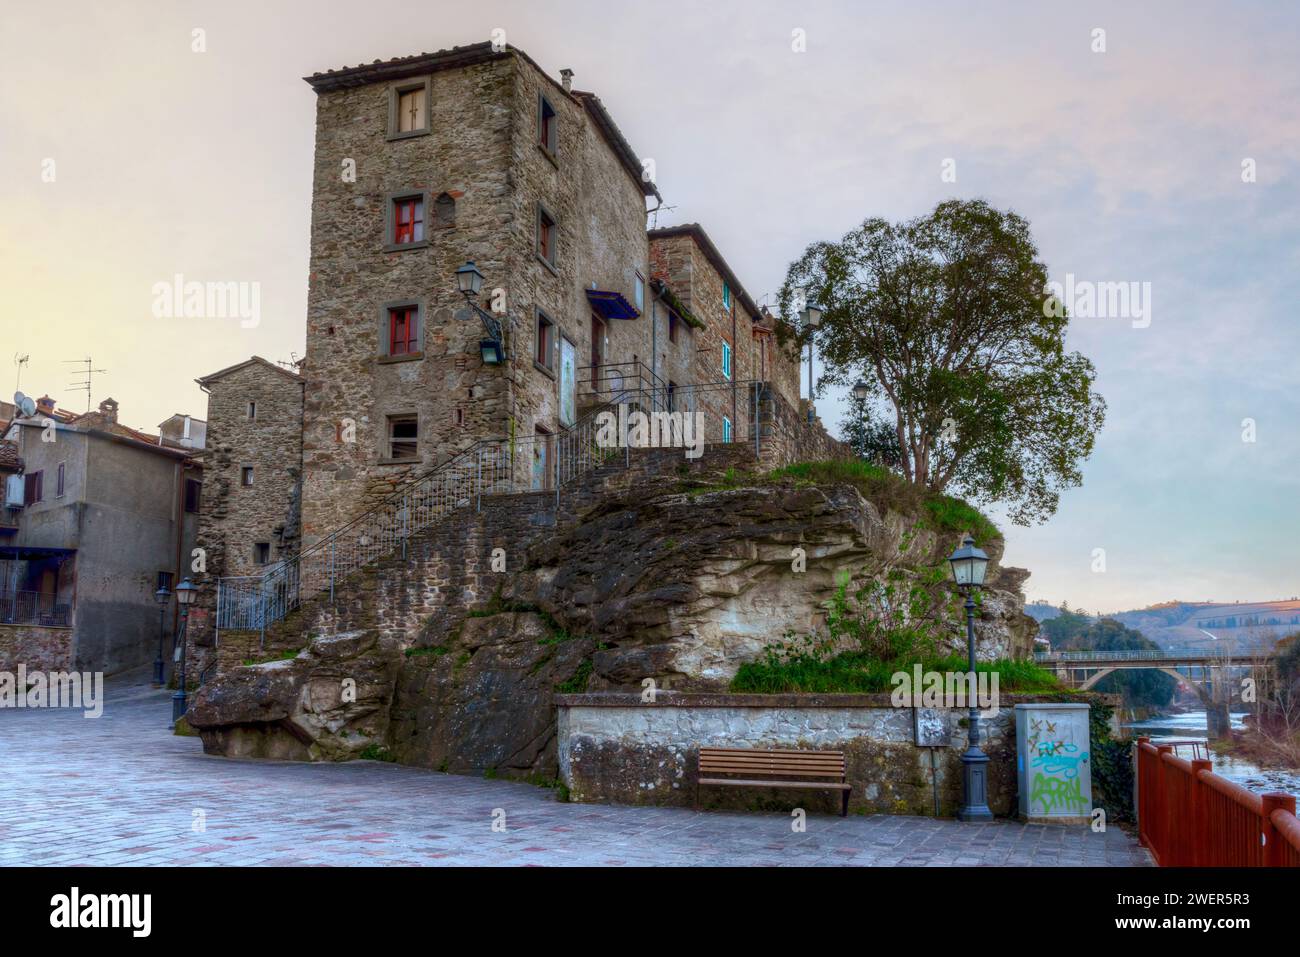 The castle in Subbiano, near Arezzo, Tuscany, Italy. Stock Photo